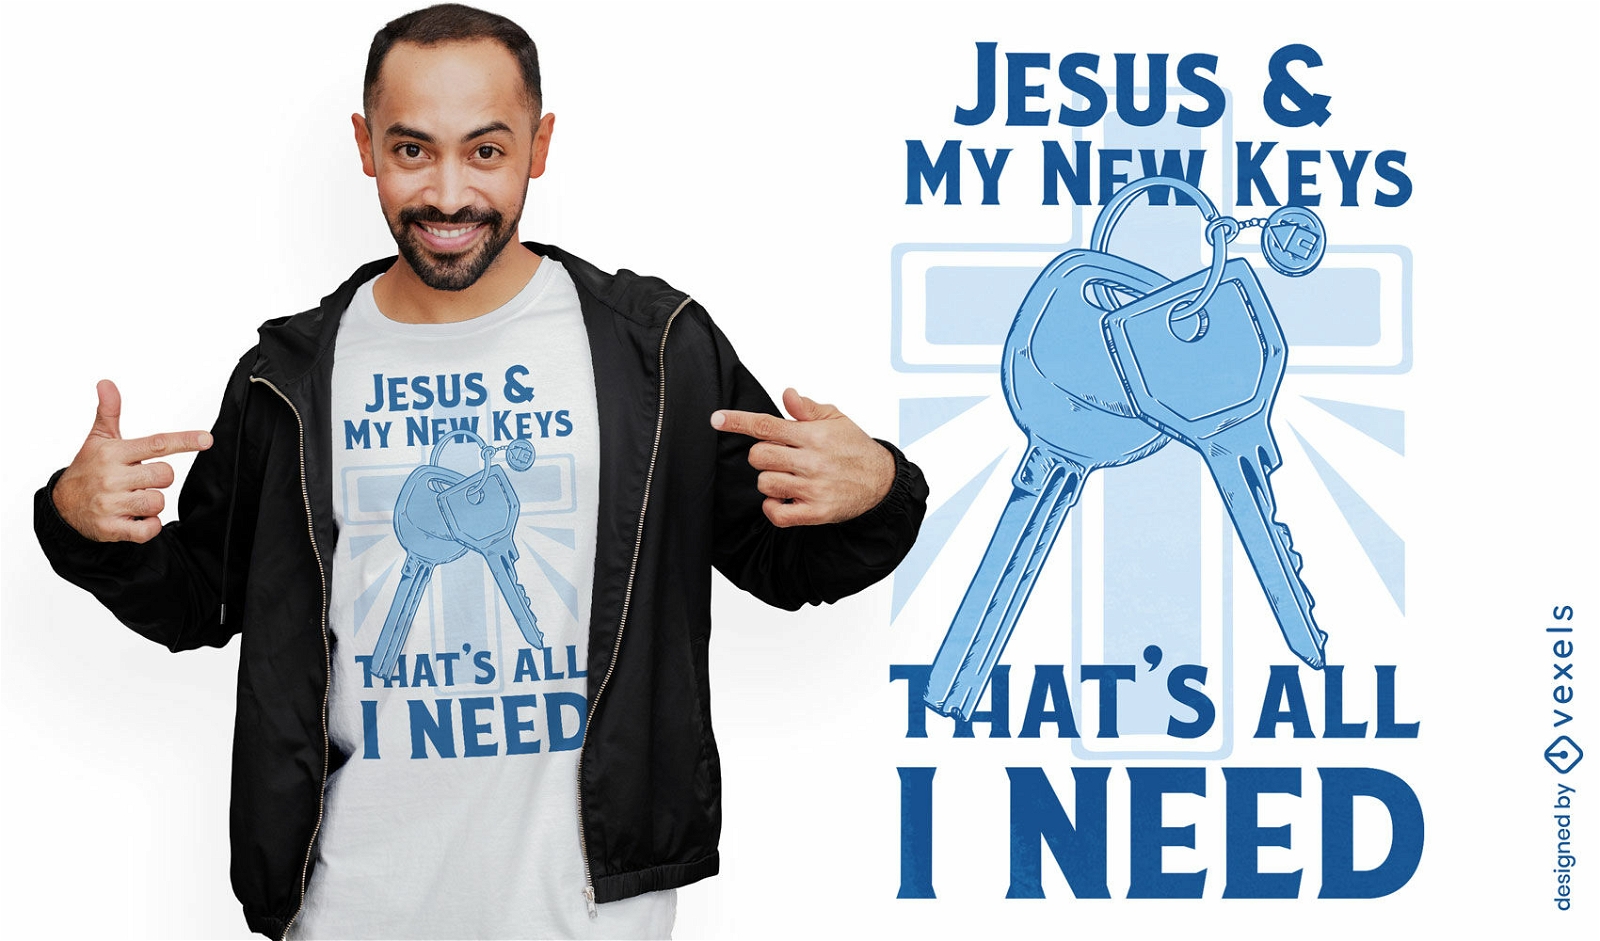 Neue Hausschl?ssel und Jesus-T-Shirt-Design